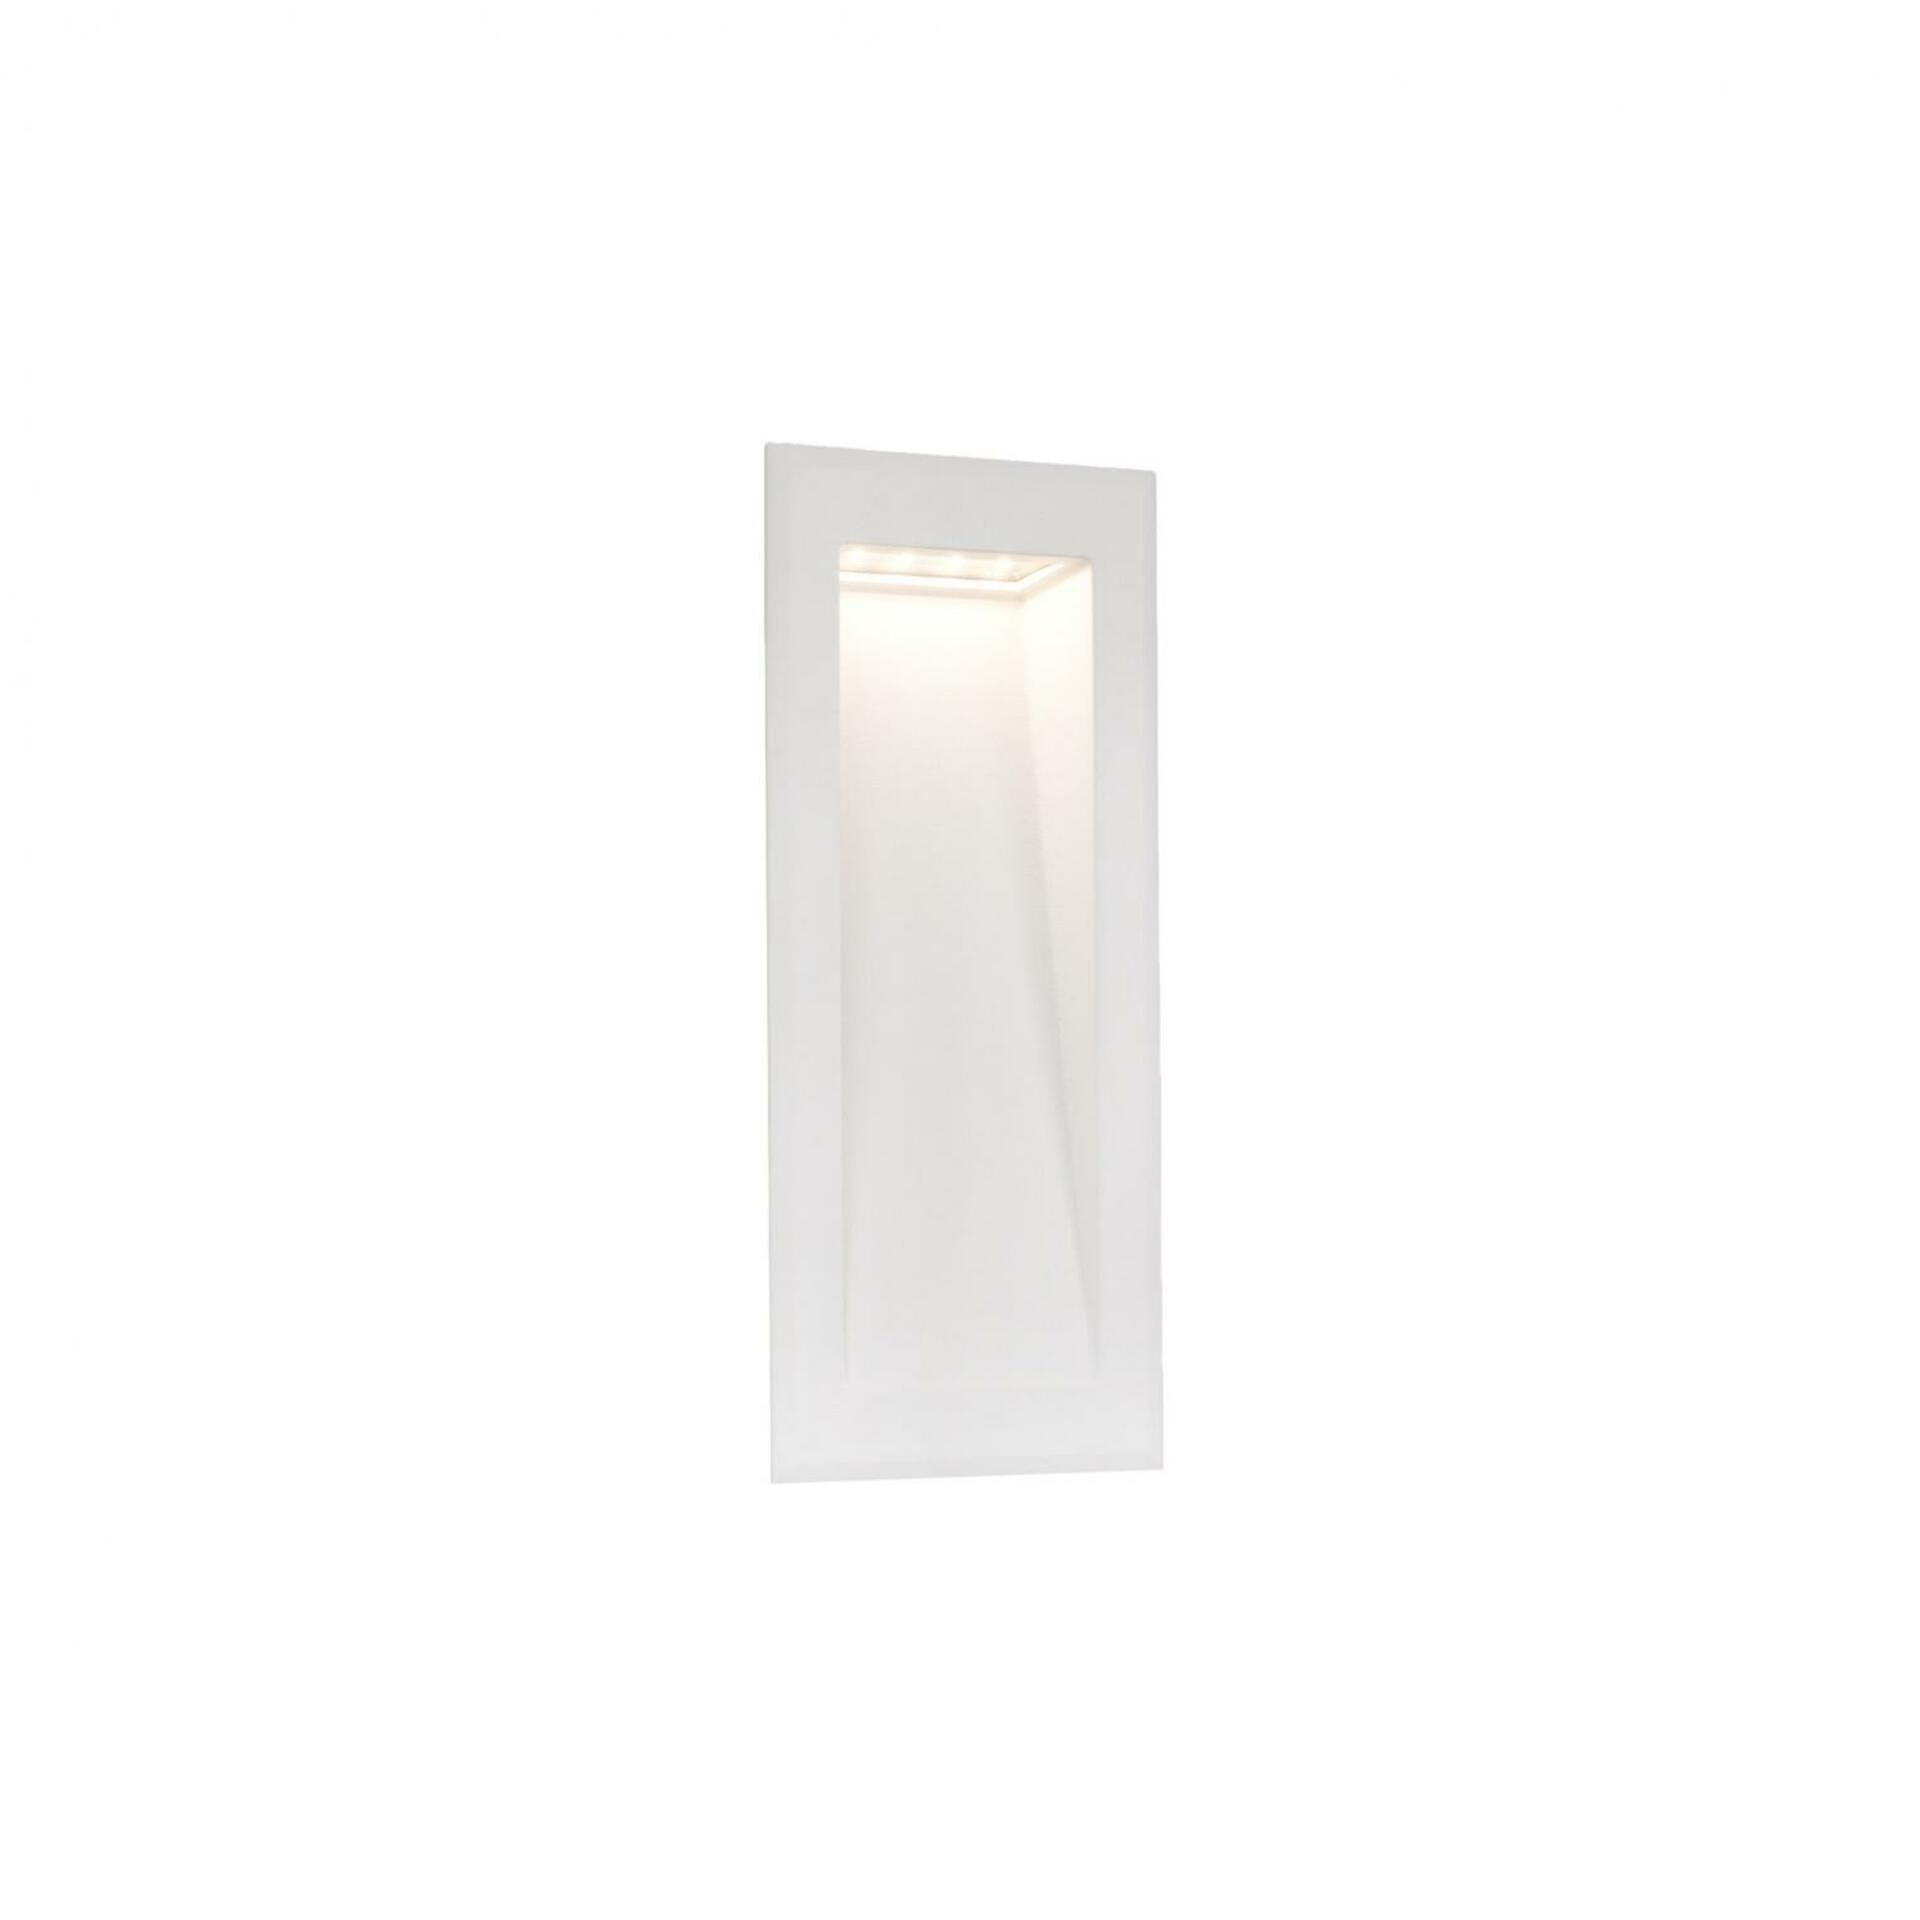 FARO SOUN 105 zapuštěné svítidlo do zdi, bílá